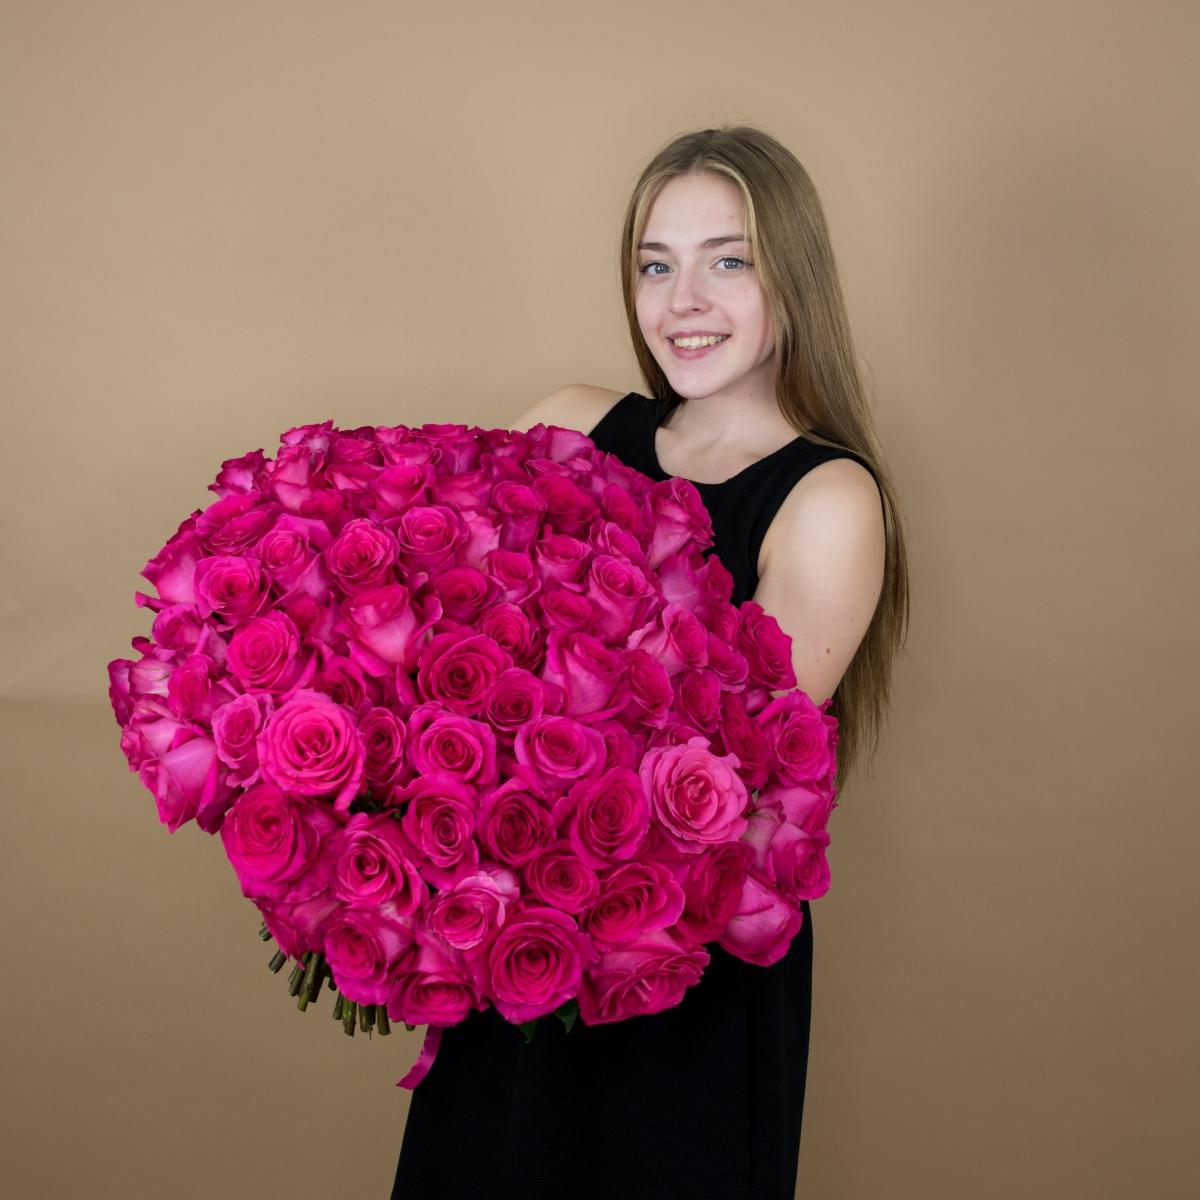 Букет из розовых роз 75 шт. (40 см)